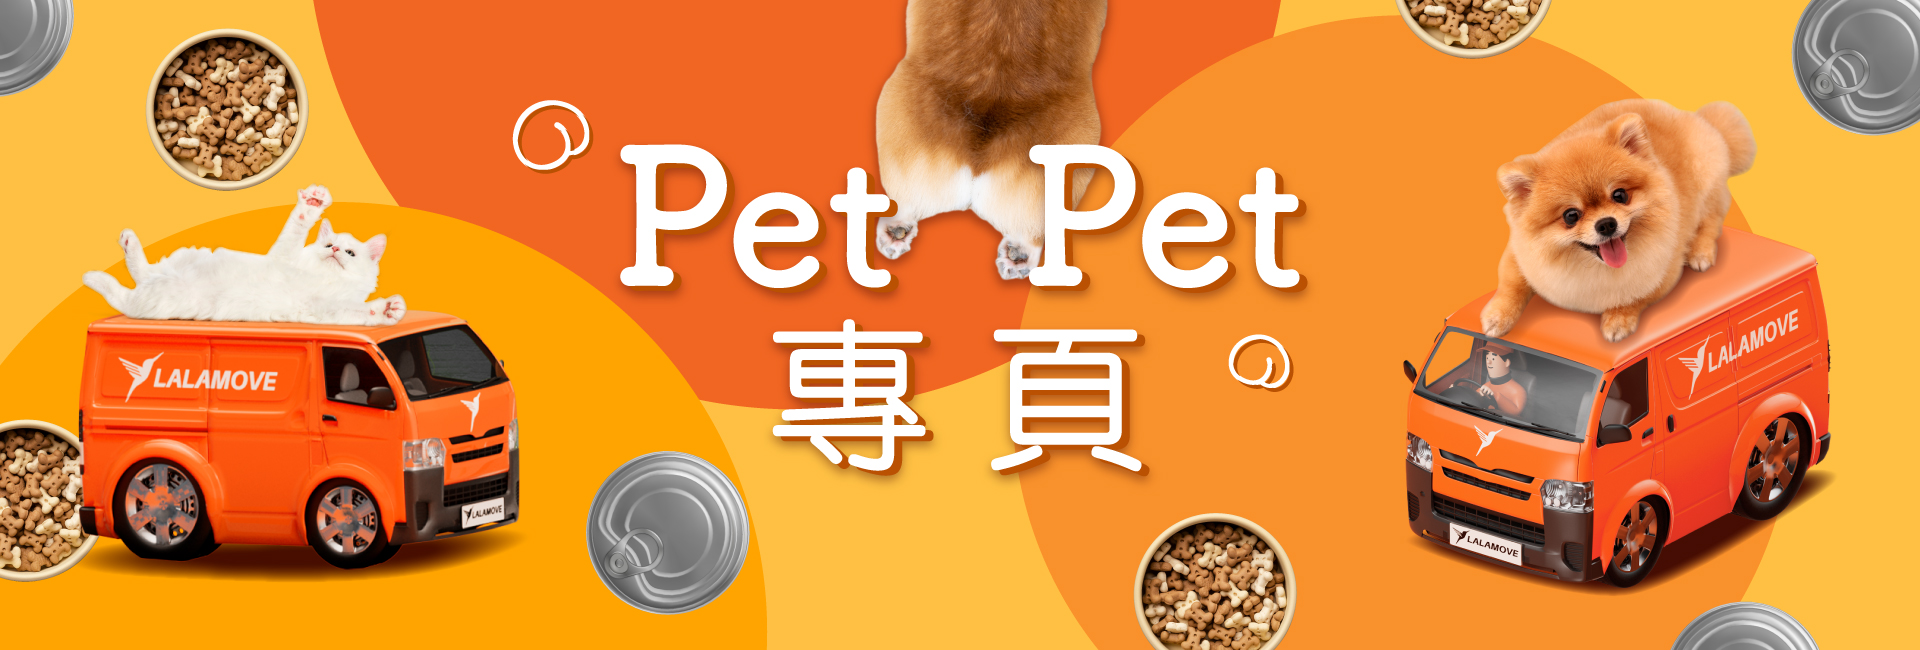 PetPet專頁 | 寵物接送優惠、最新活動、購物資訊一頁睇哂